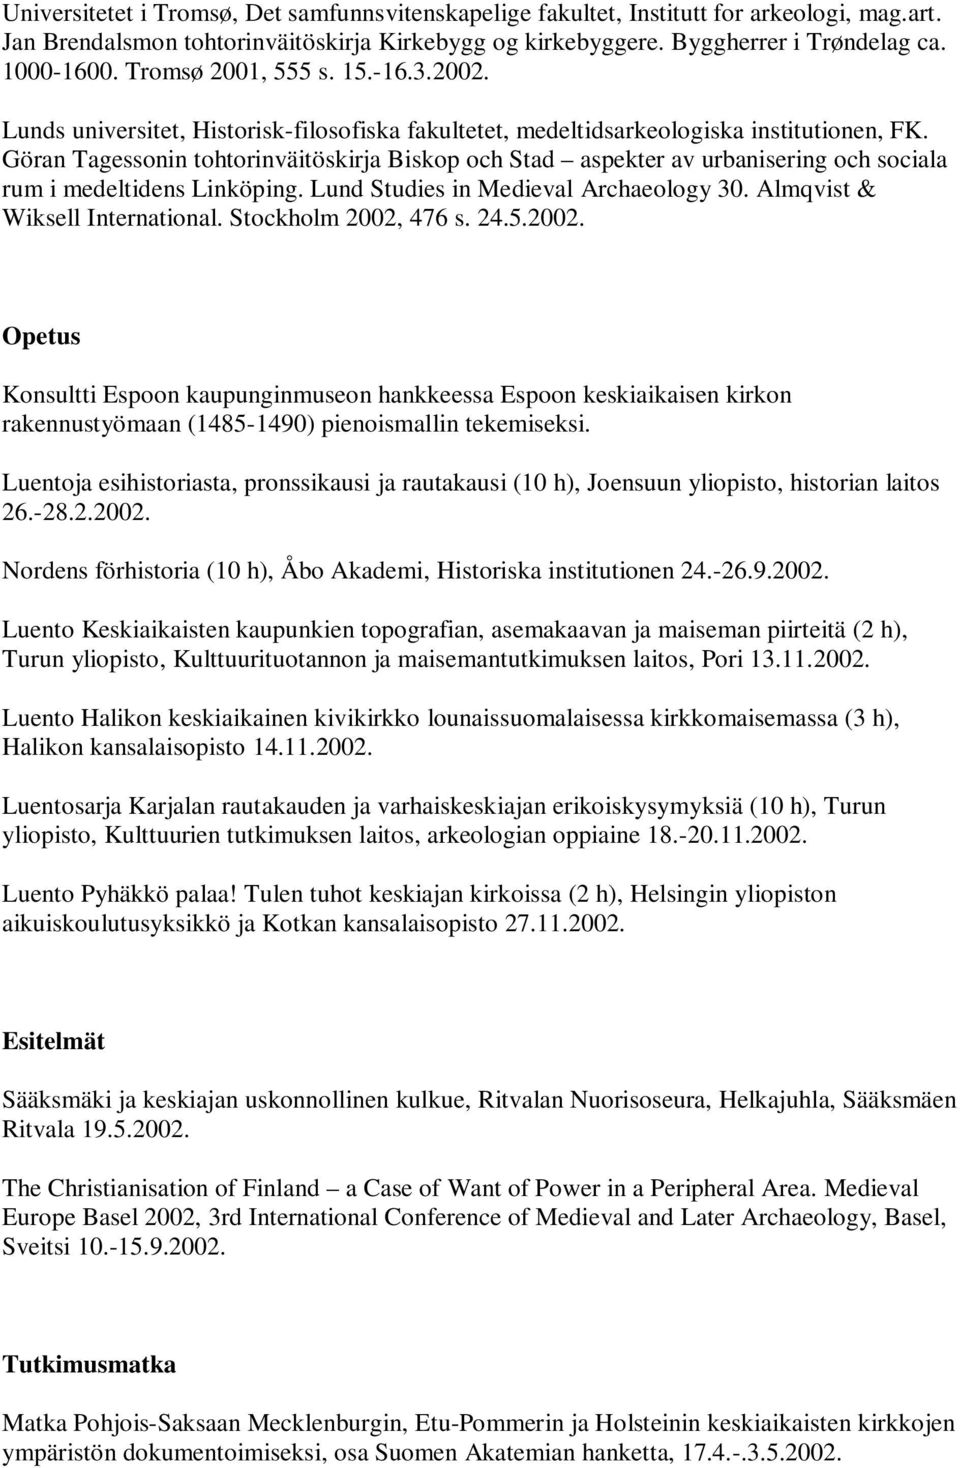 Göran Tagessonin tohtorinväitöskirja Biskop och Stad aspekter av urbanisering och sociala rum i medeltidens Linköping. Lund Studies in Medieval Archaeology 30. Almqvist & Wiksell International.